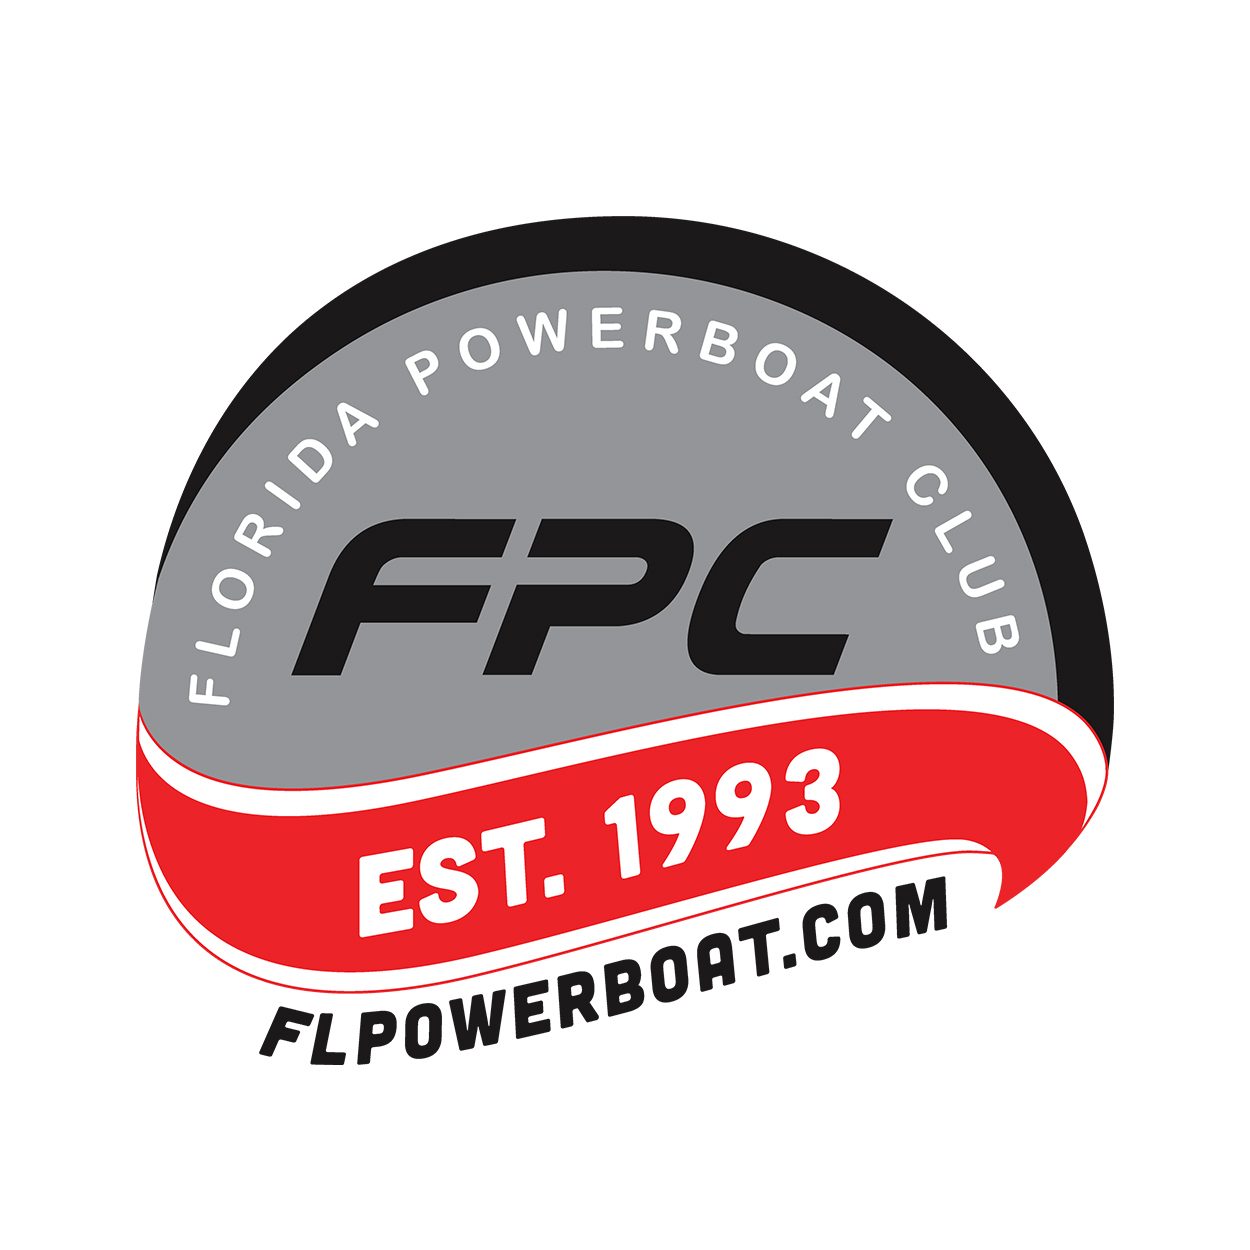 Florida Powerboat Club logo